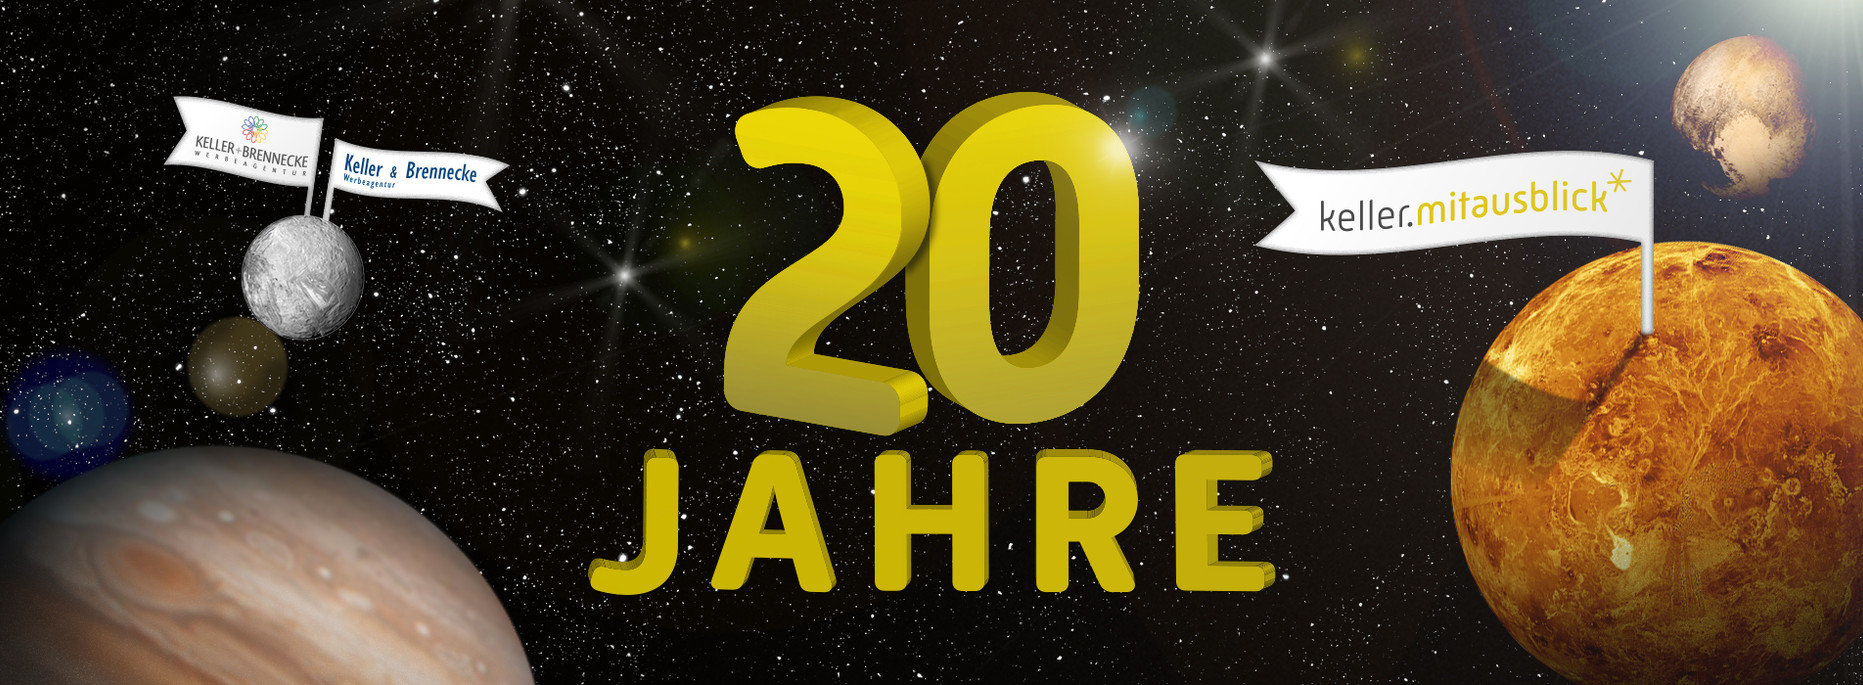 20-jähriges Agenturjubiläum | keller.mitausblick News